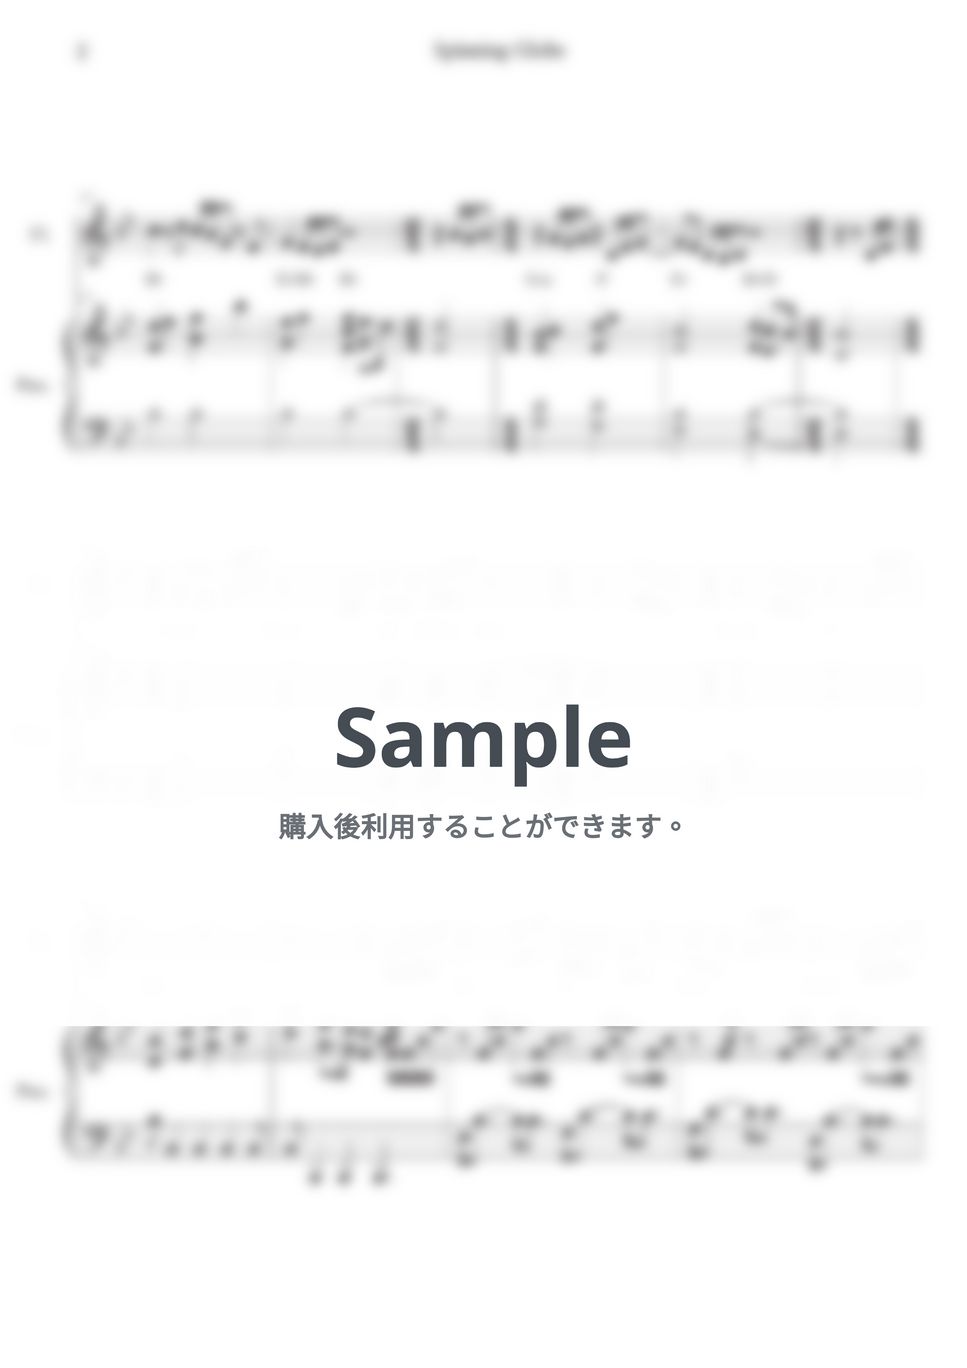 米津玄師 - 地球儀 (Ensemble) by Melonical